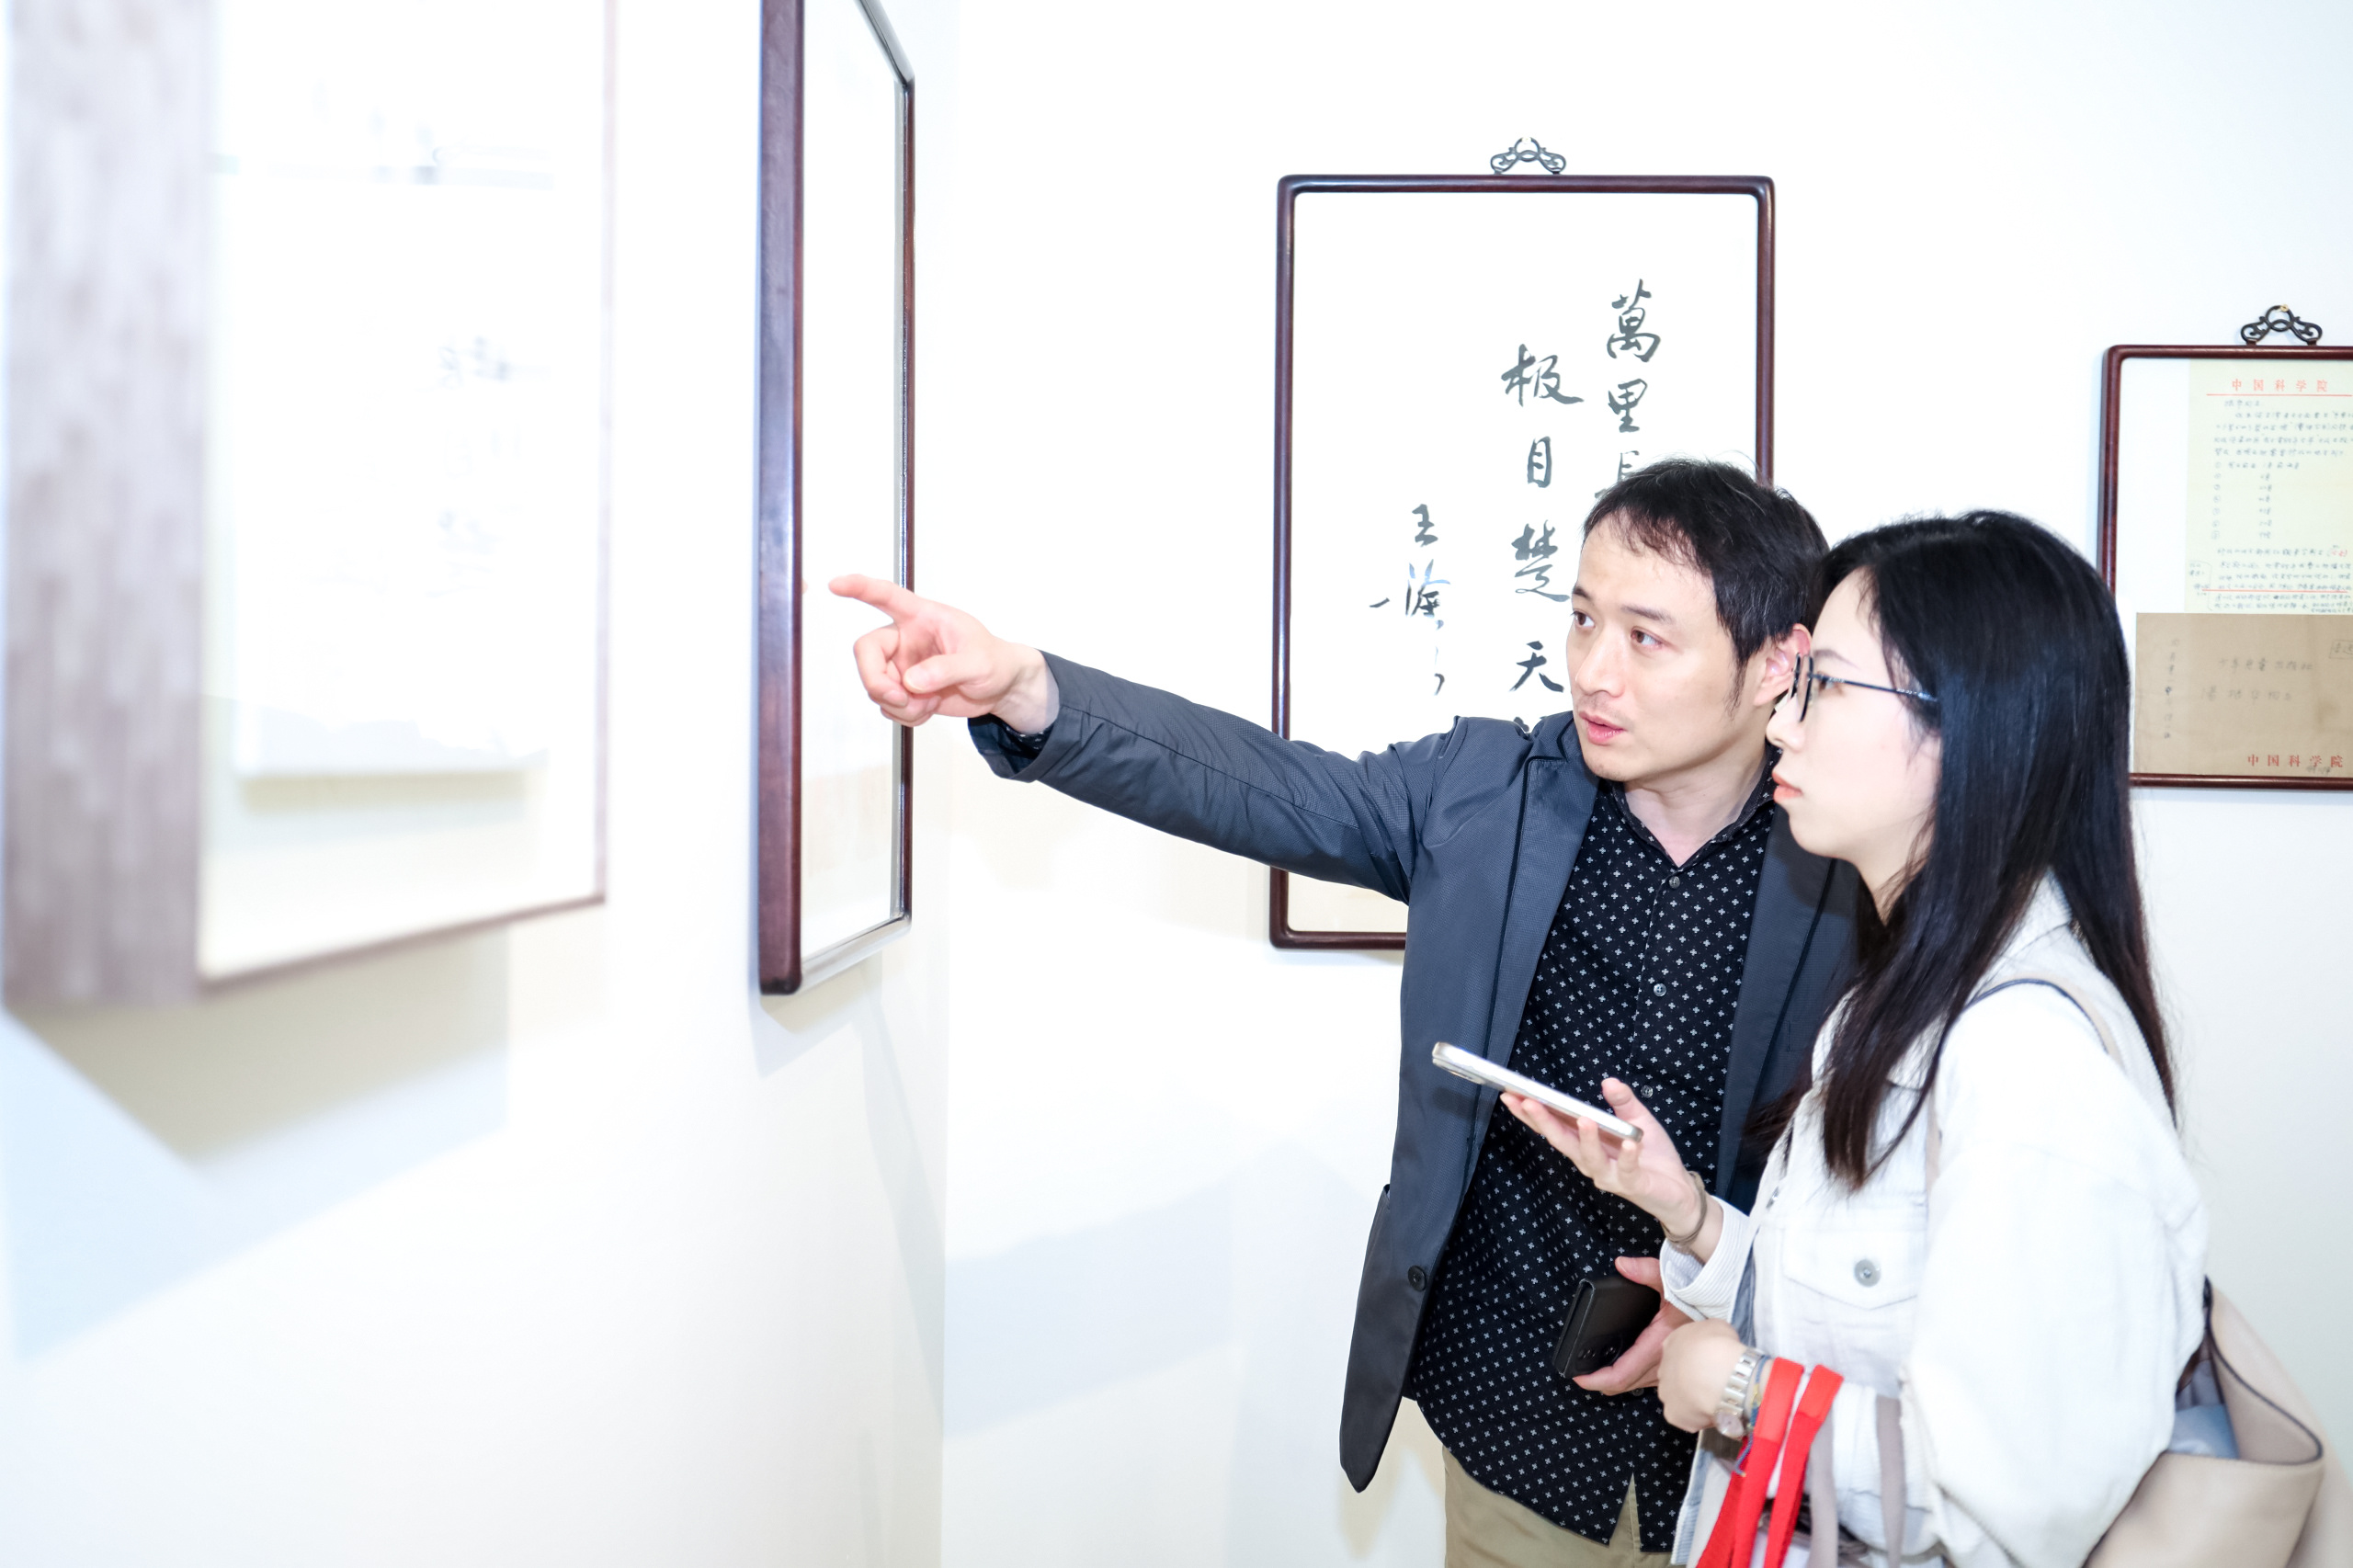 《白玉兰盛开——中国人文与科学珍藏展》在张园开幕